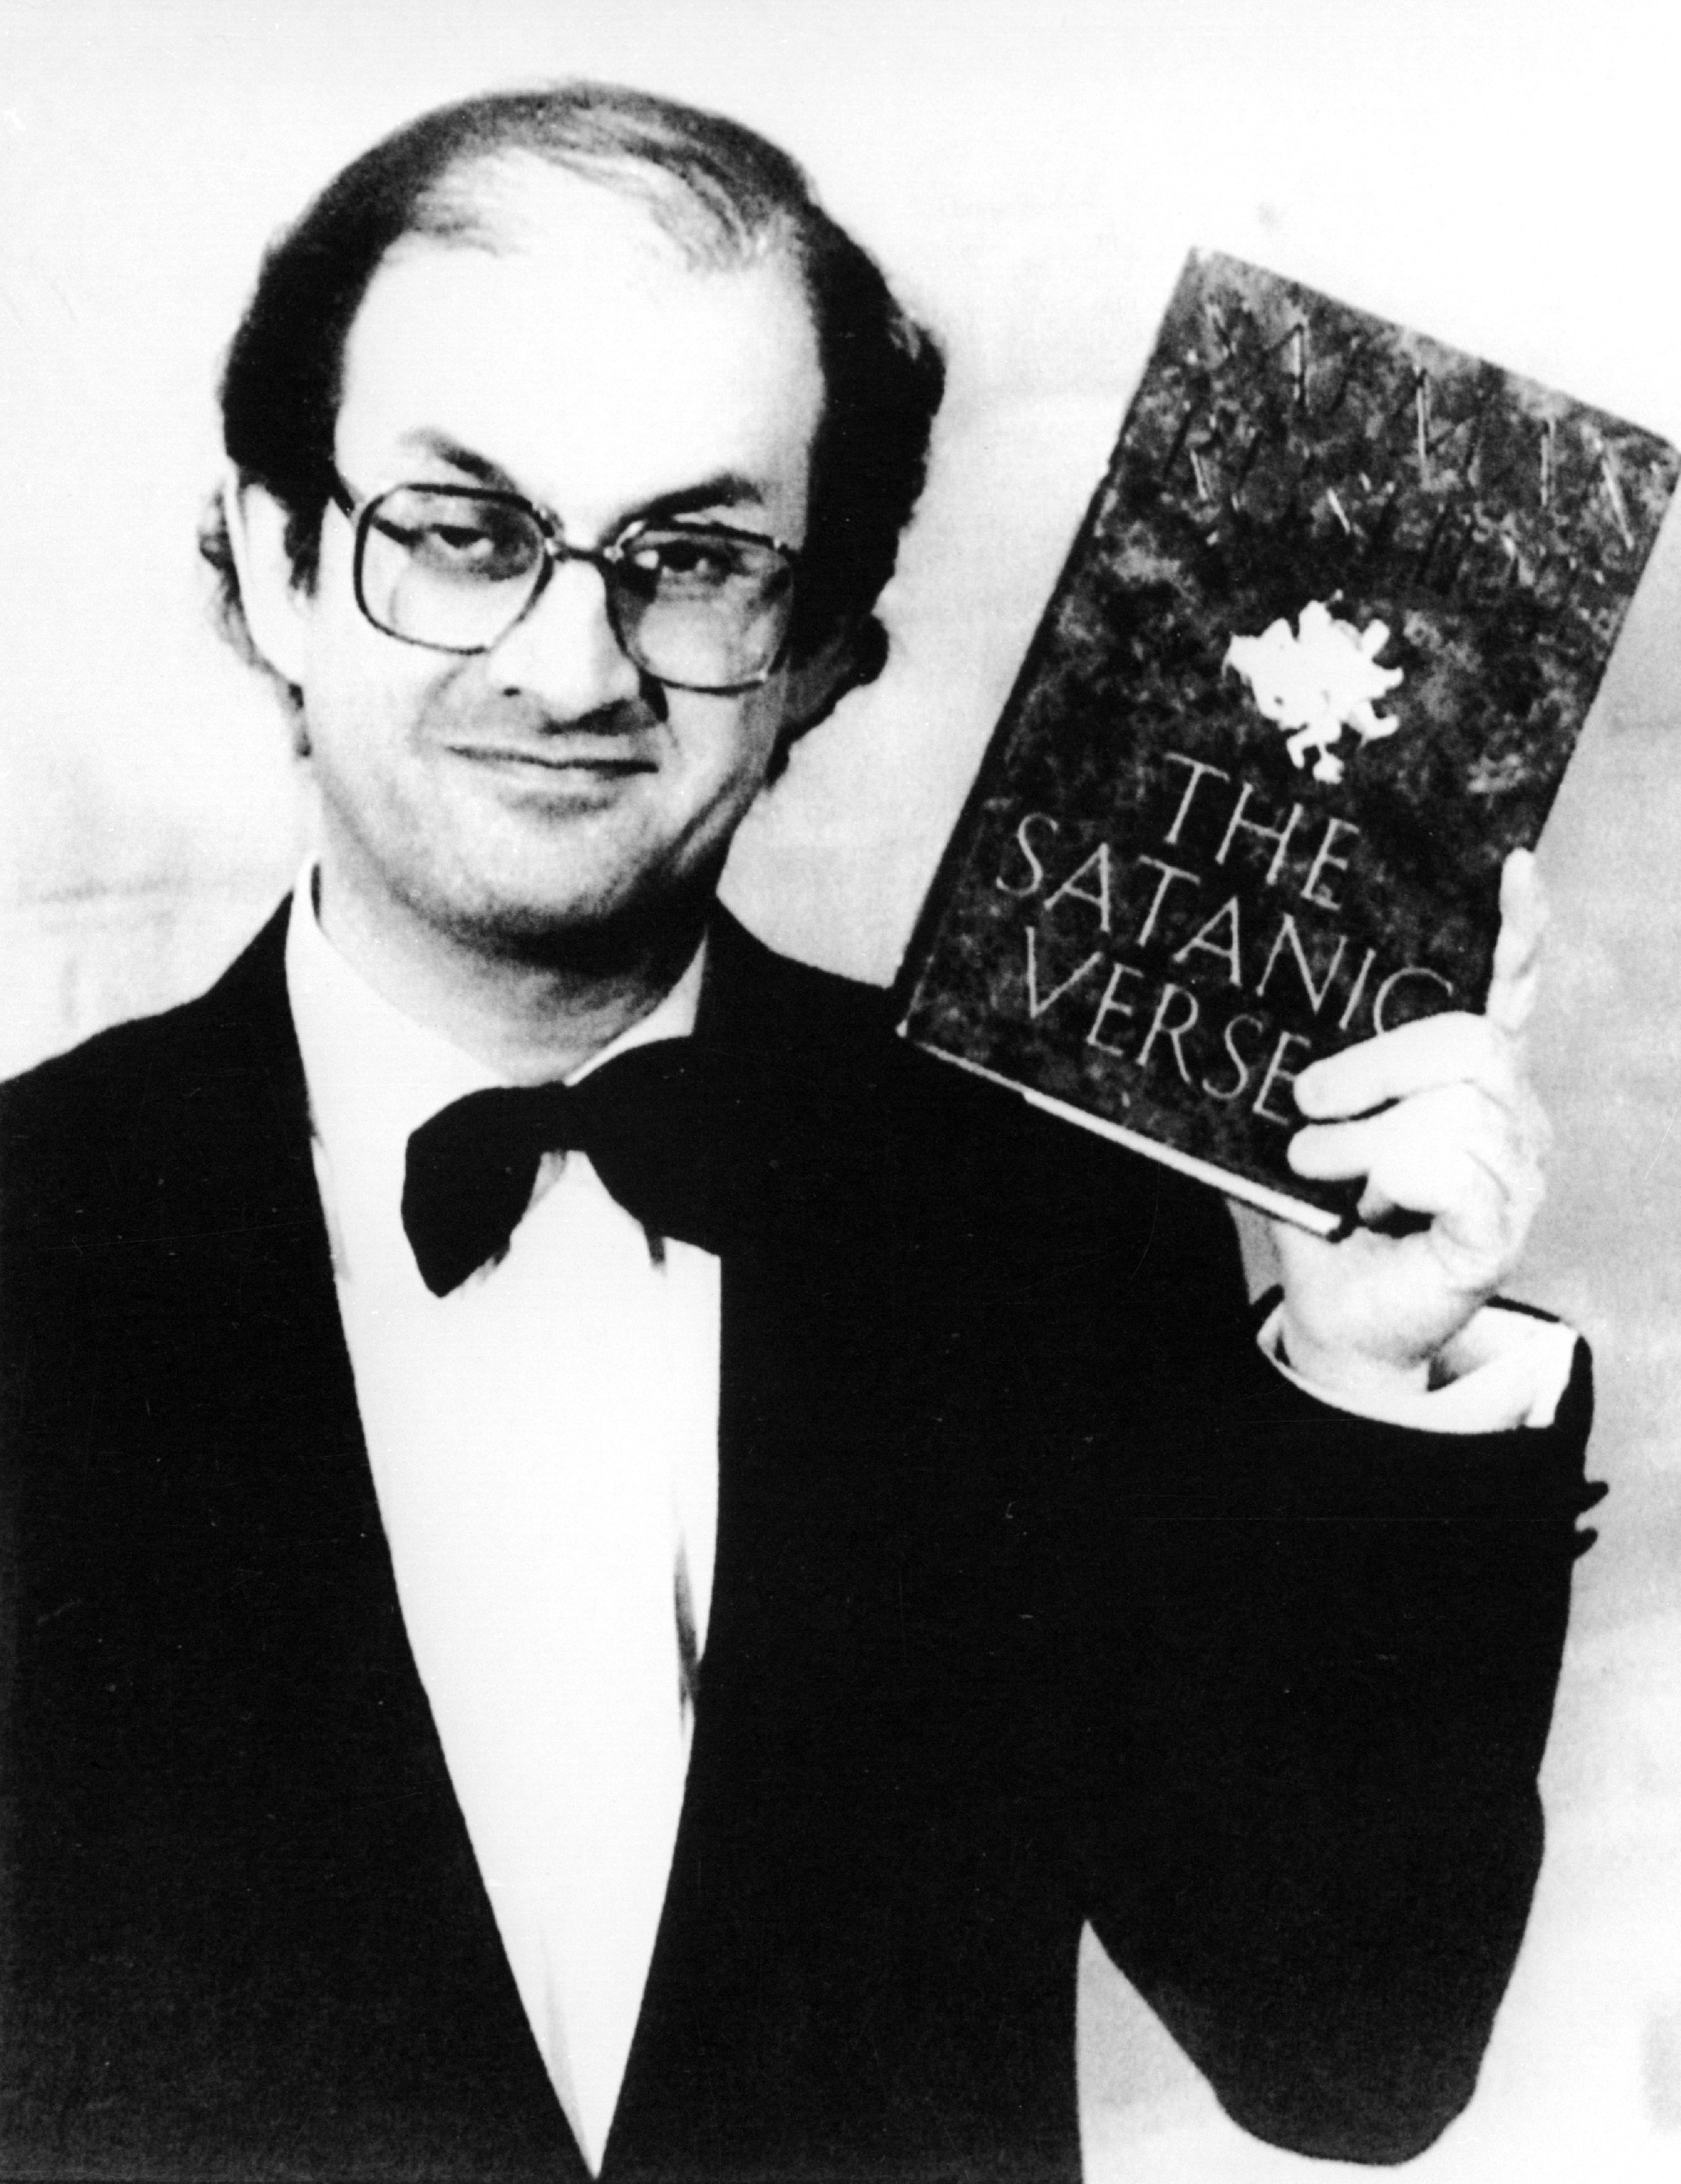 Megkéselték Salman Rushdie-t